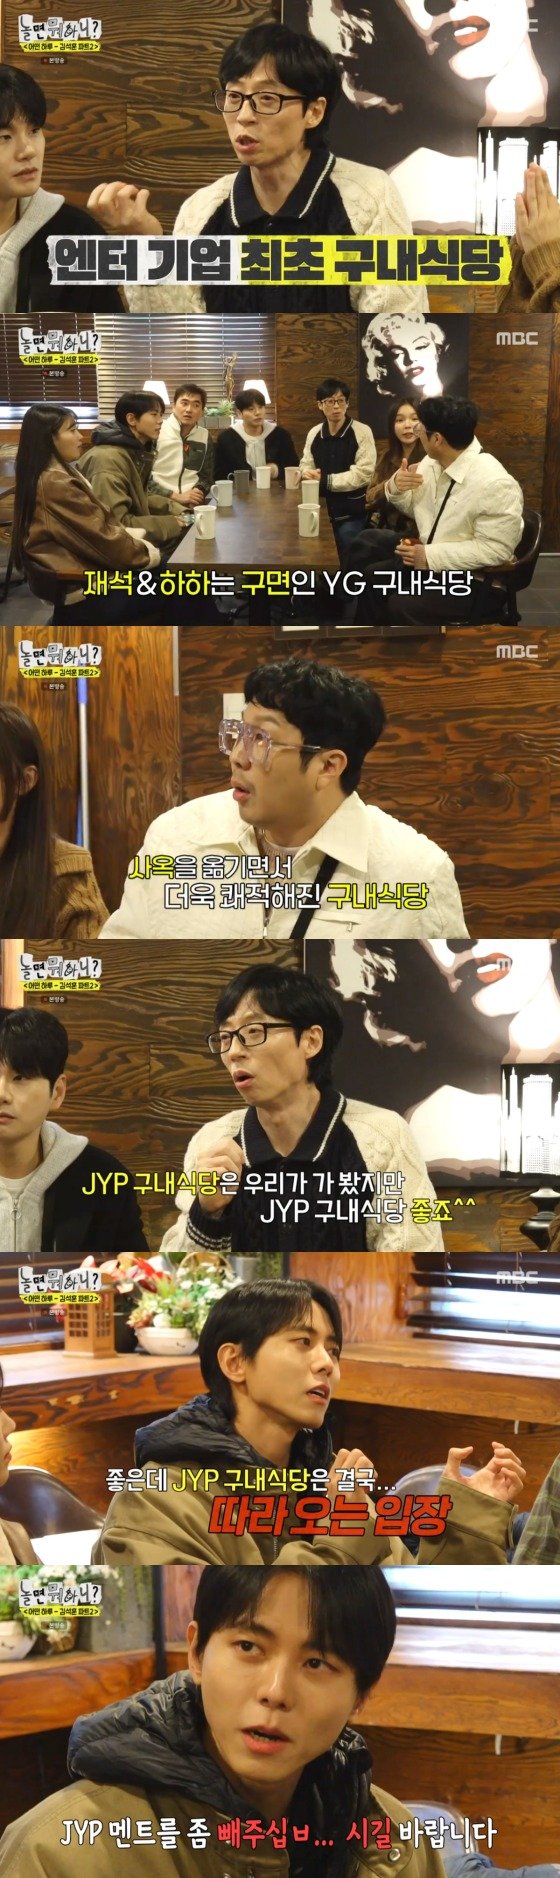 주우재 "JYP 구내식당은 YG 따라오는 입장"